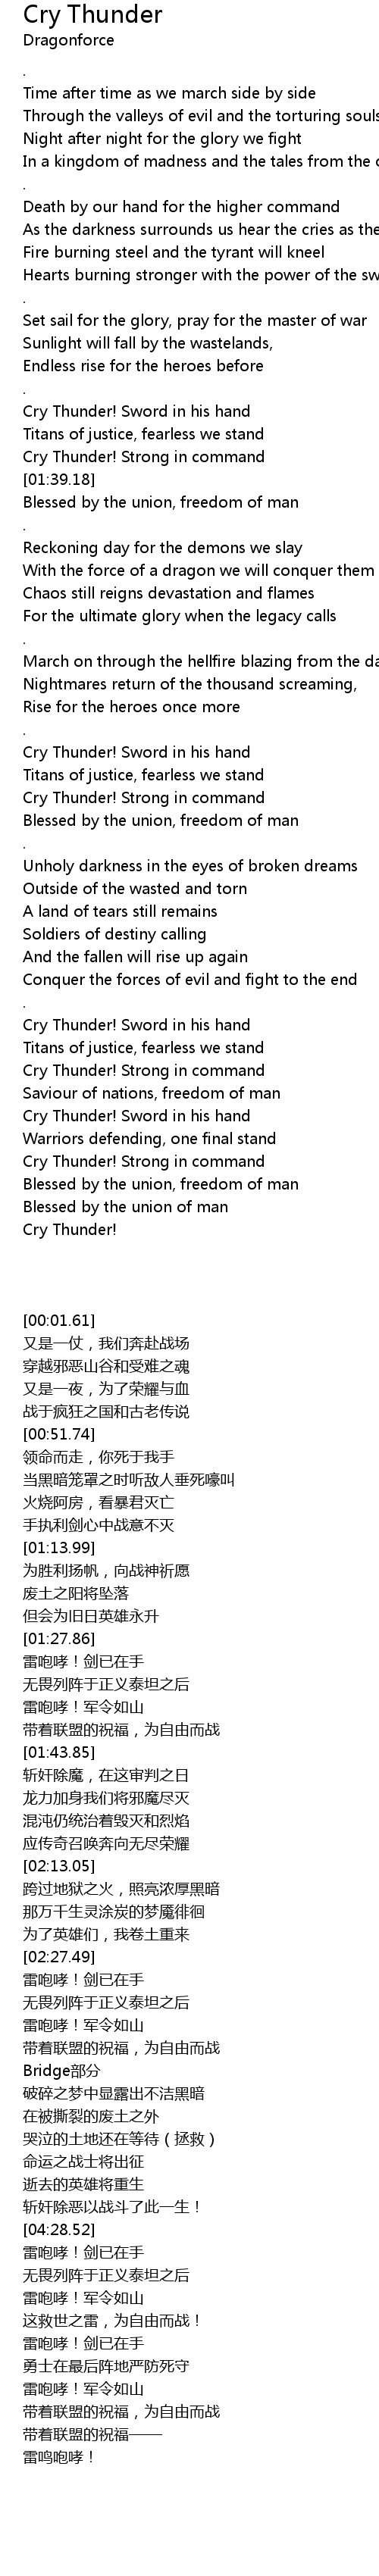 Cry Thunder Lyrics Follow Lyrics